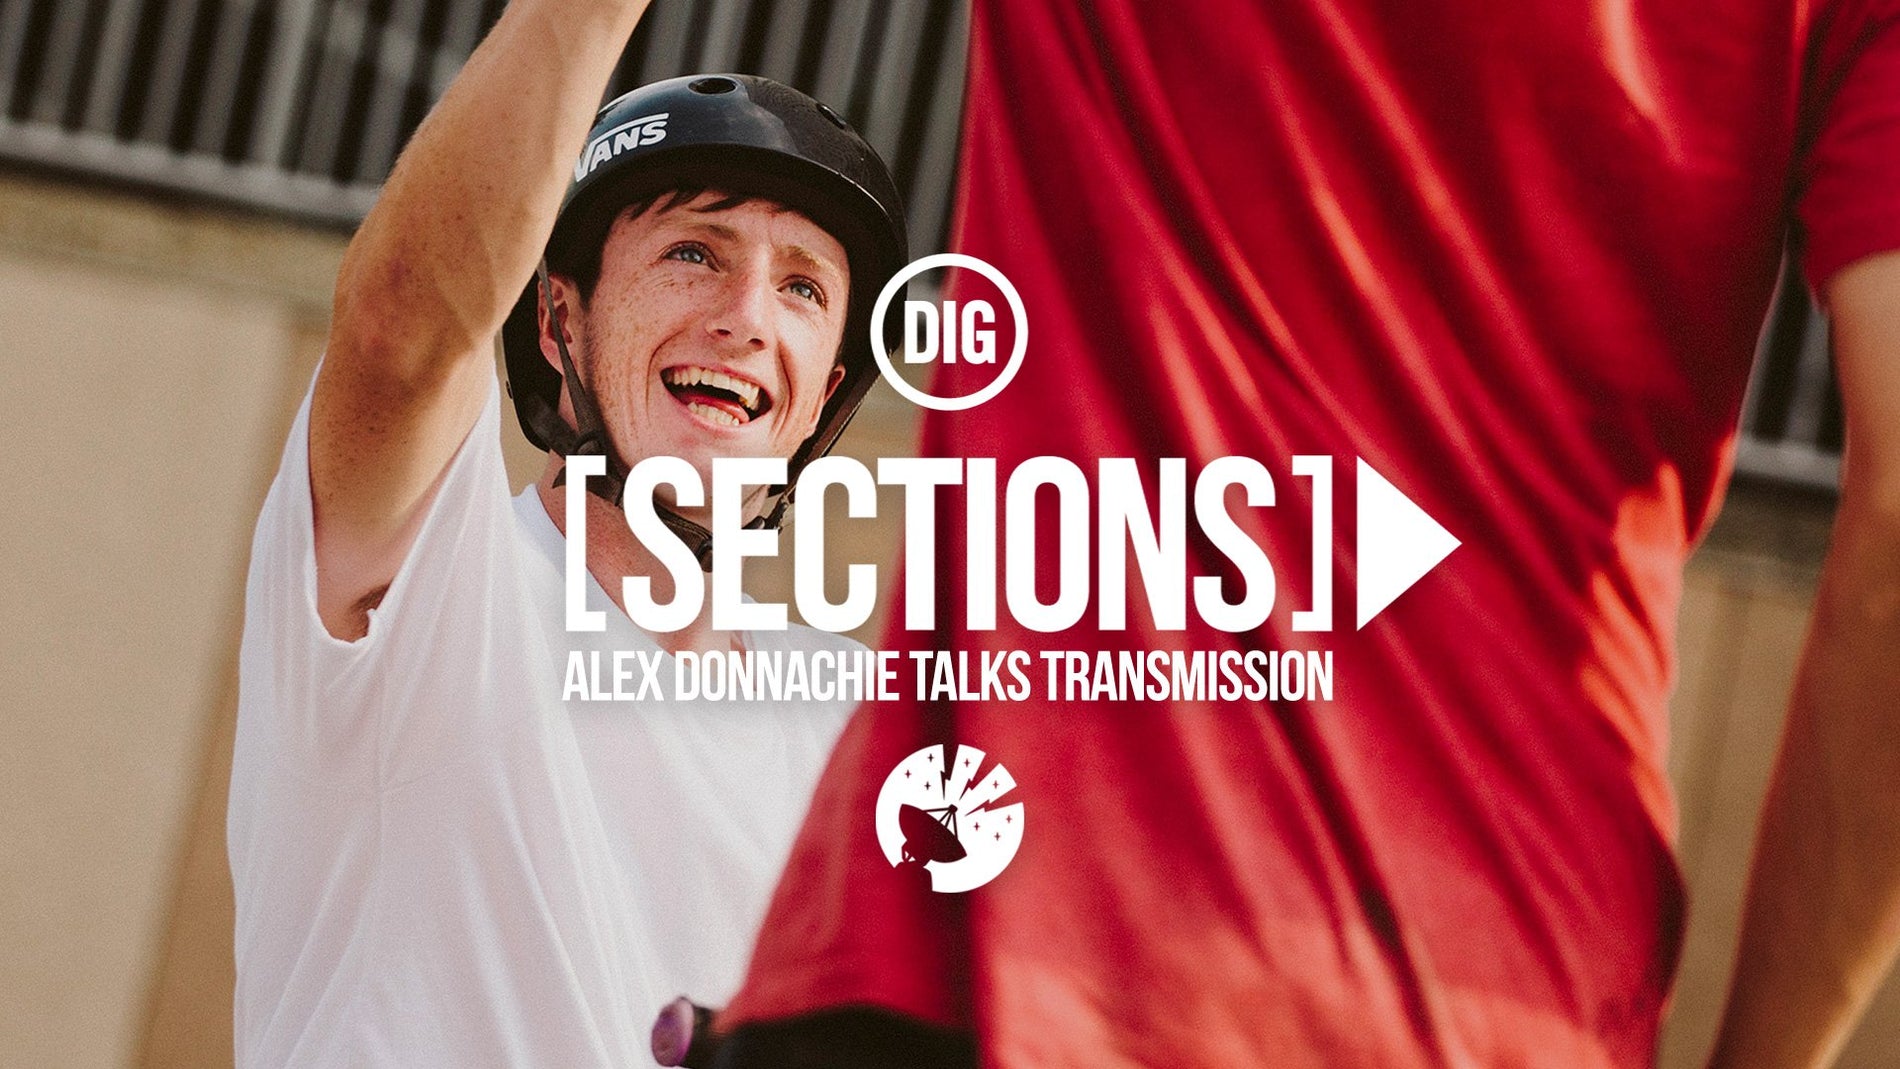 Alex Donnachie 'Sections'